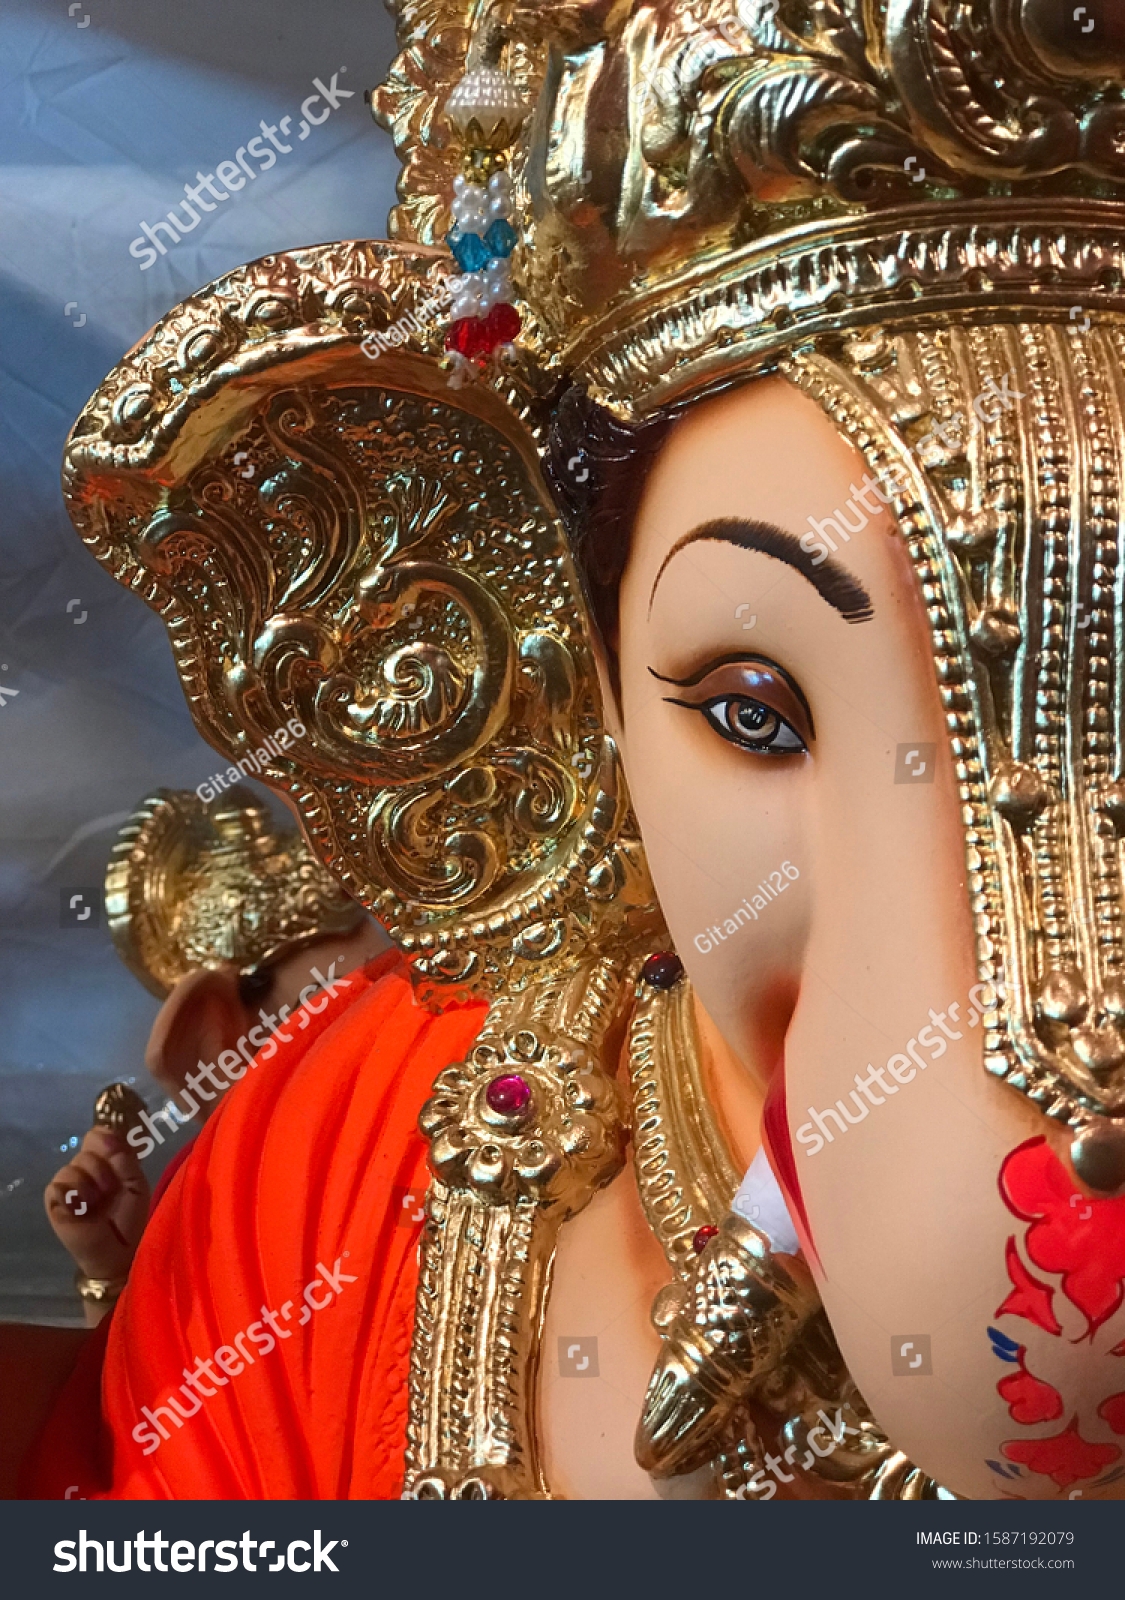 Ganpati Bappa Idol Beautiful Sculpture Stock Photo Edit Now 1587192079 Ganpati bappa status video भगवान गणेश, जिसे आमतौर पर गणपति के रूप में जाना जाता है, आमतौर पर पूरे भारत में घरों और कार्यालयों में एक बंडल, मुस्कुराते हुए, और कुछ हद तक डरपोक देवता के रूप में चित्रित किया जाता ganpati bappa status in marathi,ganesh chaturthi wishes in marathi →. https www shutterstock com image photo ganpati bappa idol beautiful sculpture 1587192079